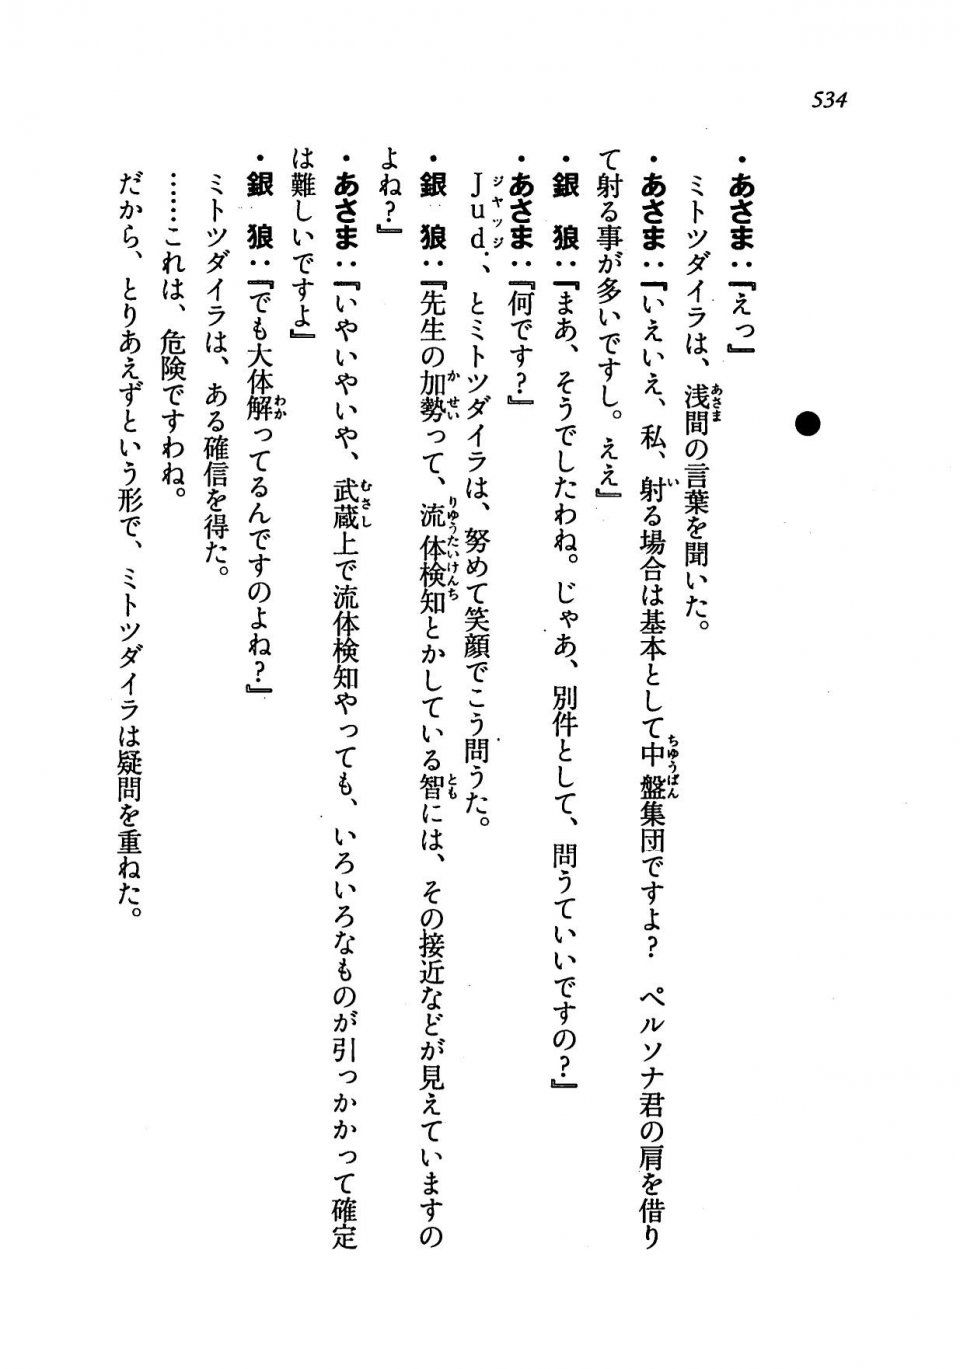 Kyoukai Senjou no Horizon LN Vol 19(8A) - Photo #534